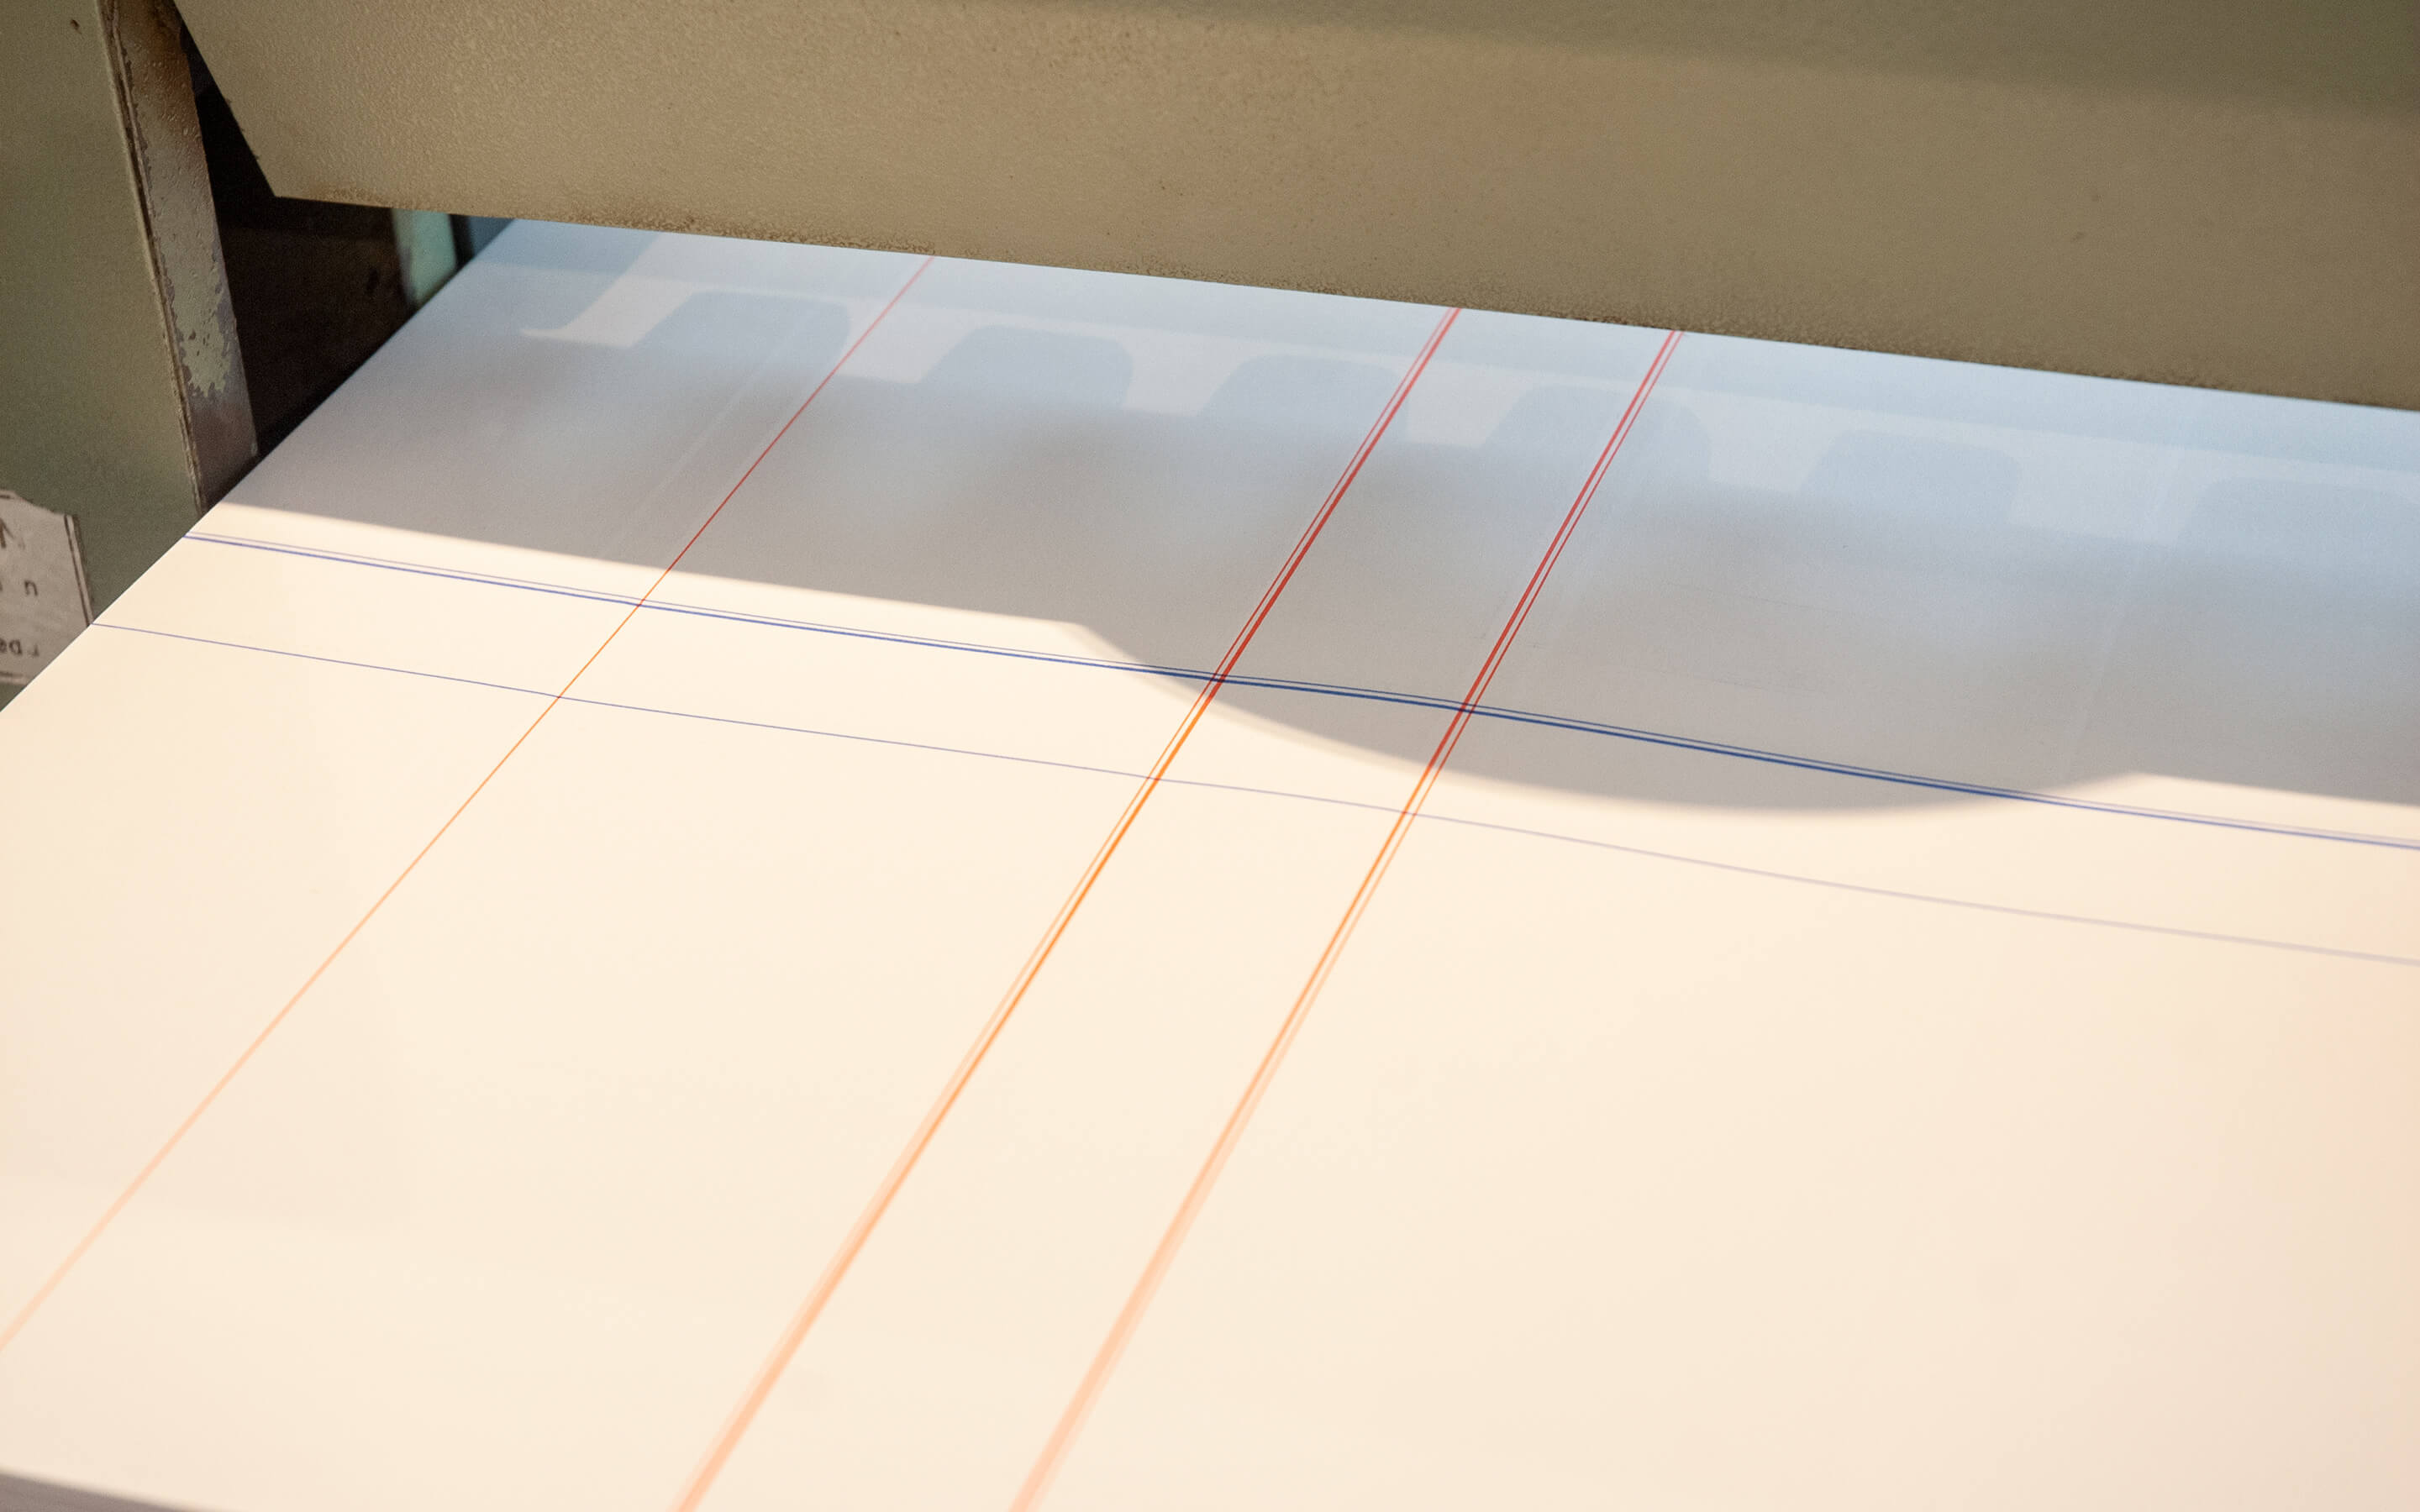 Desk-Design-Liniiermaschine-Liniierpapier-Handsatz-Buchdruck-Notizbuch-Parizzi-Buchdruck-und-Gebrauchsgrafik-4